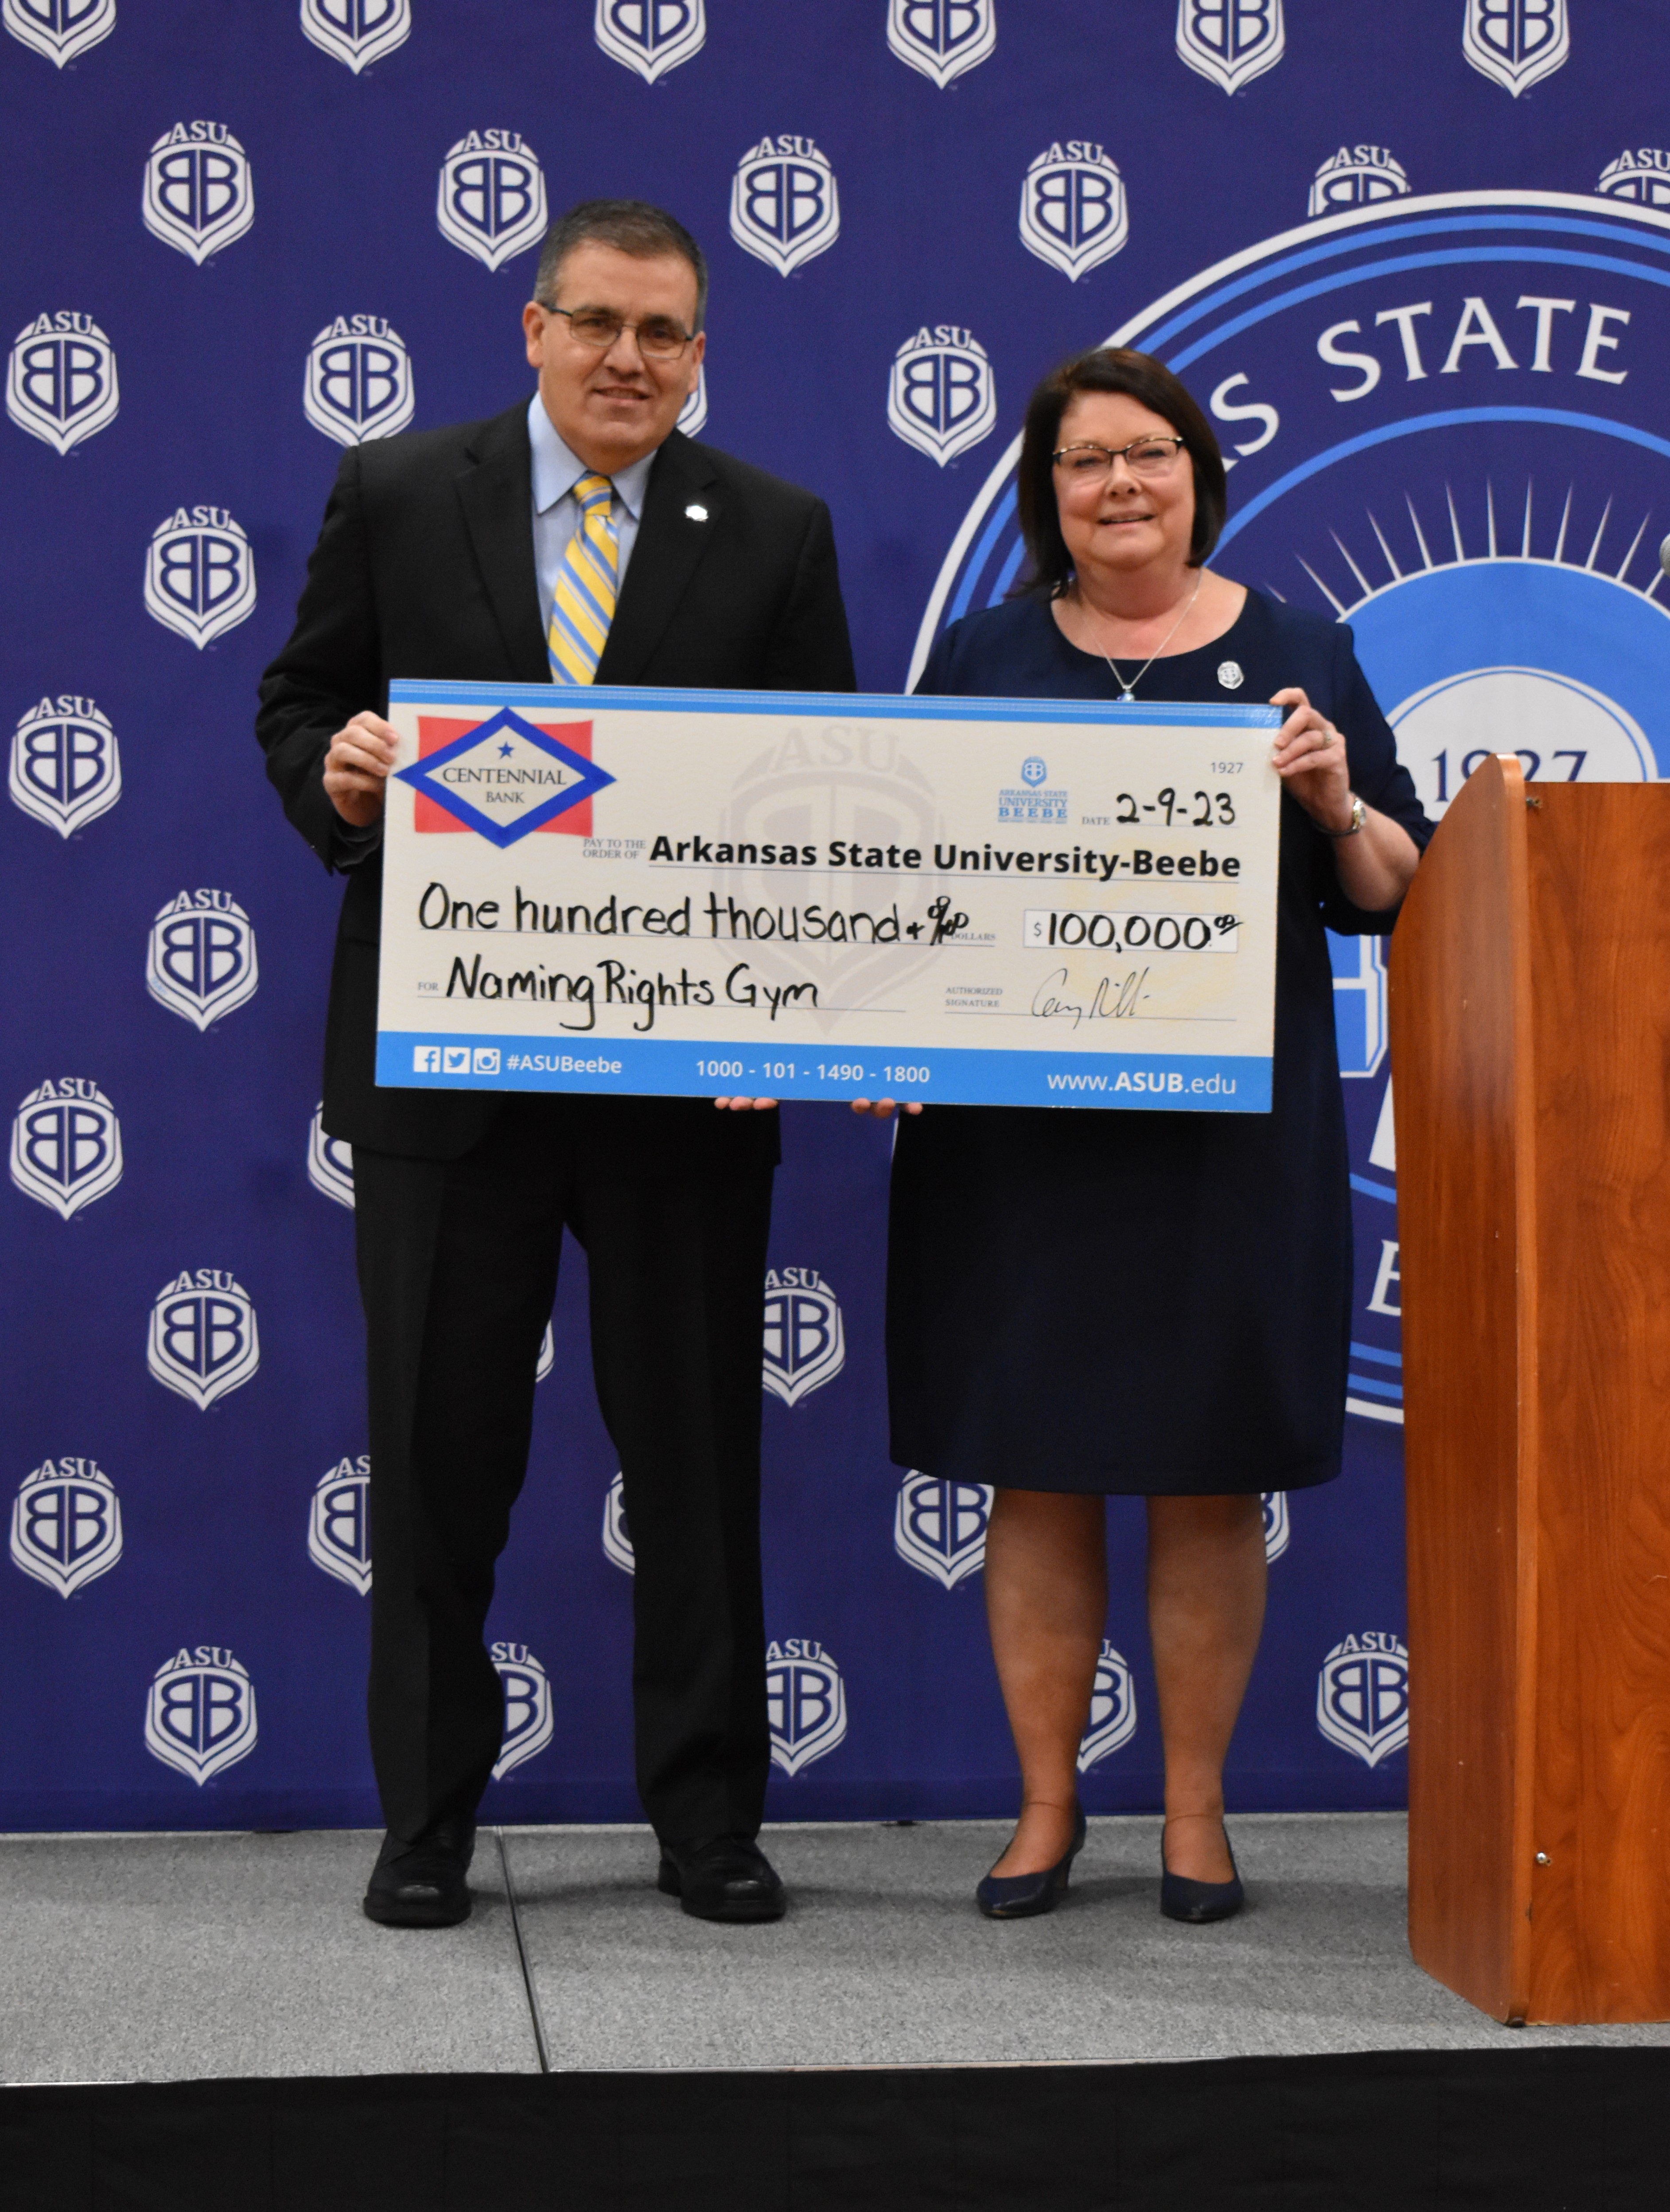 ASU-Beebe Receives $100,000 Gift from Centennial Bank for